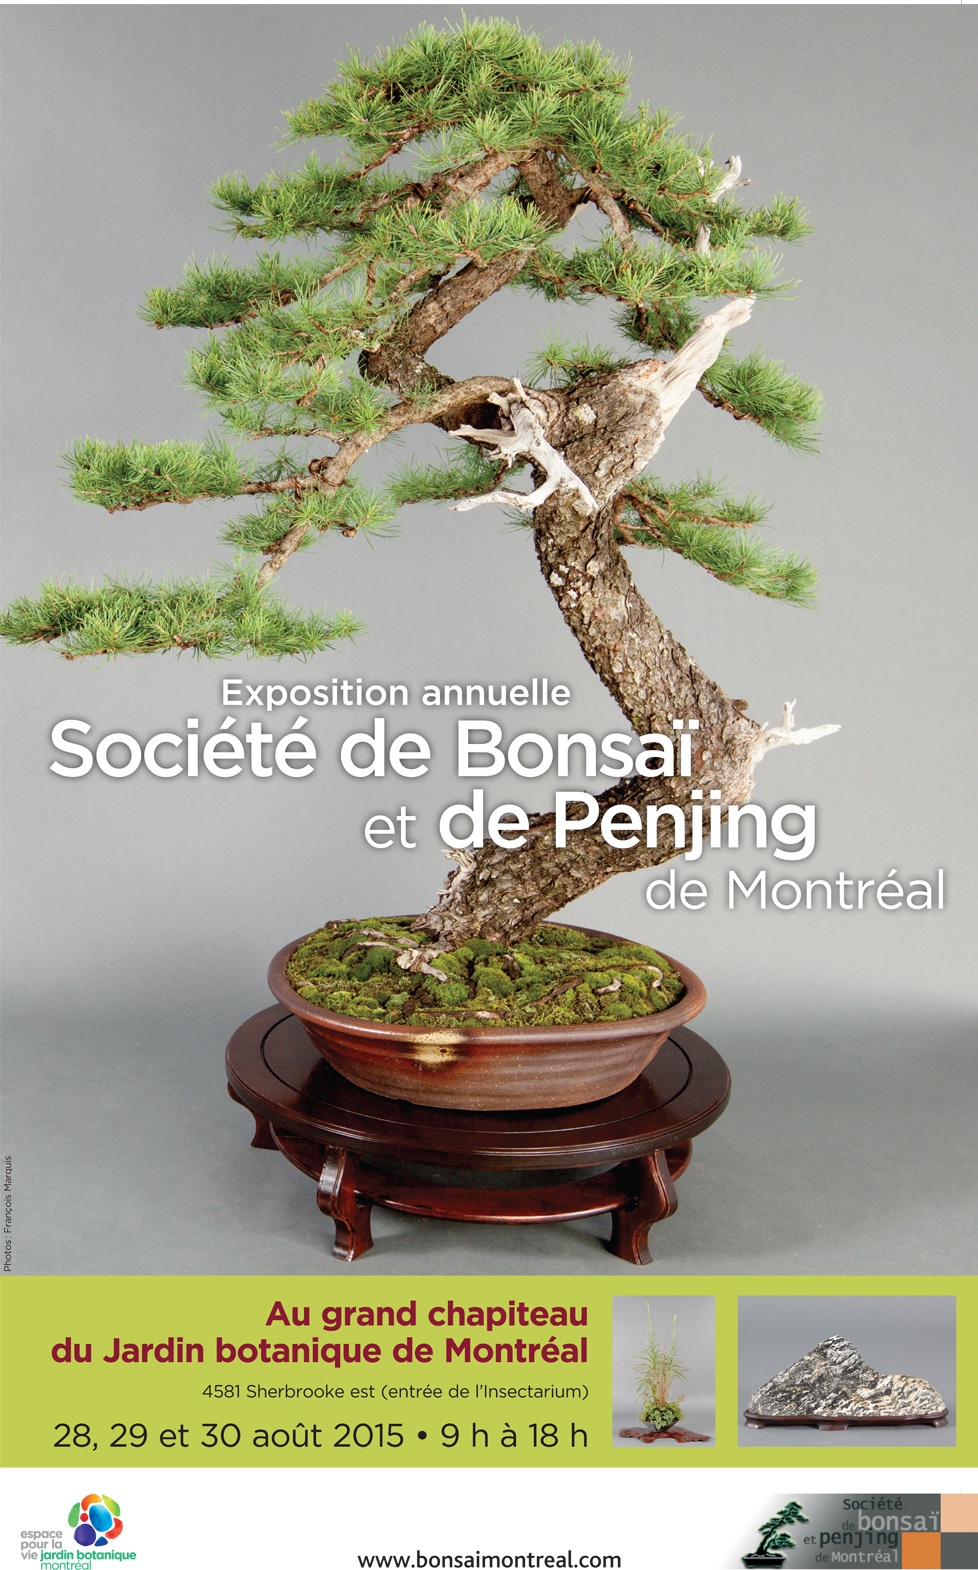 Exposition annuelle de bonsaïs et de penjing